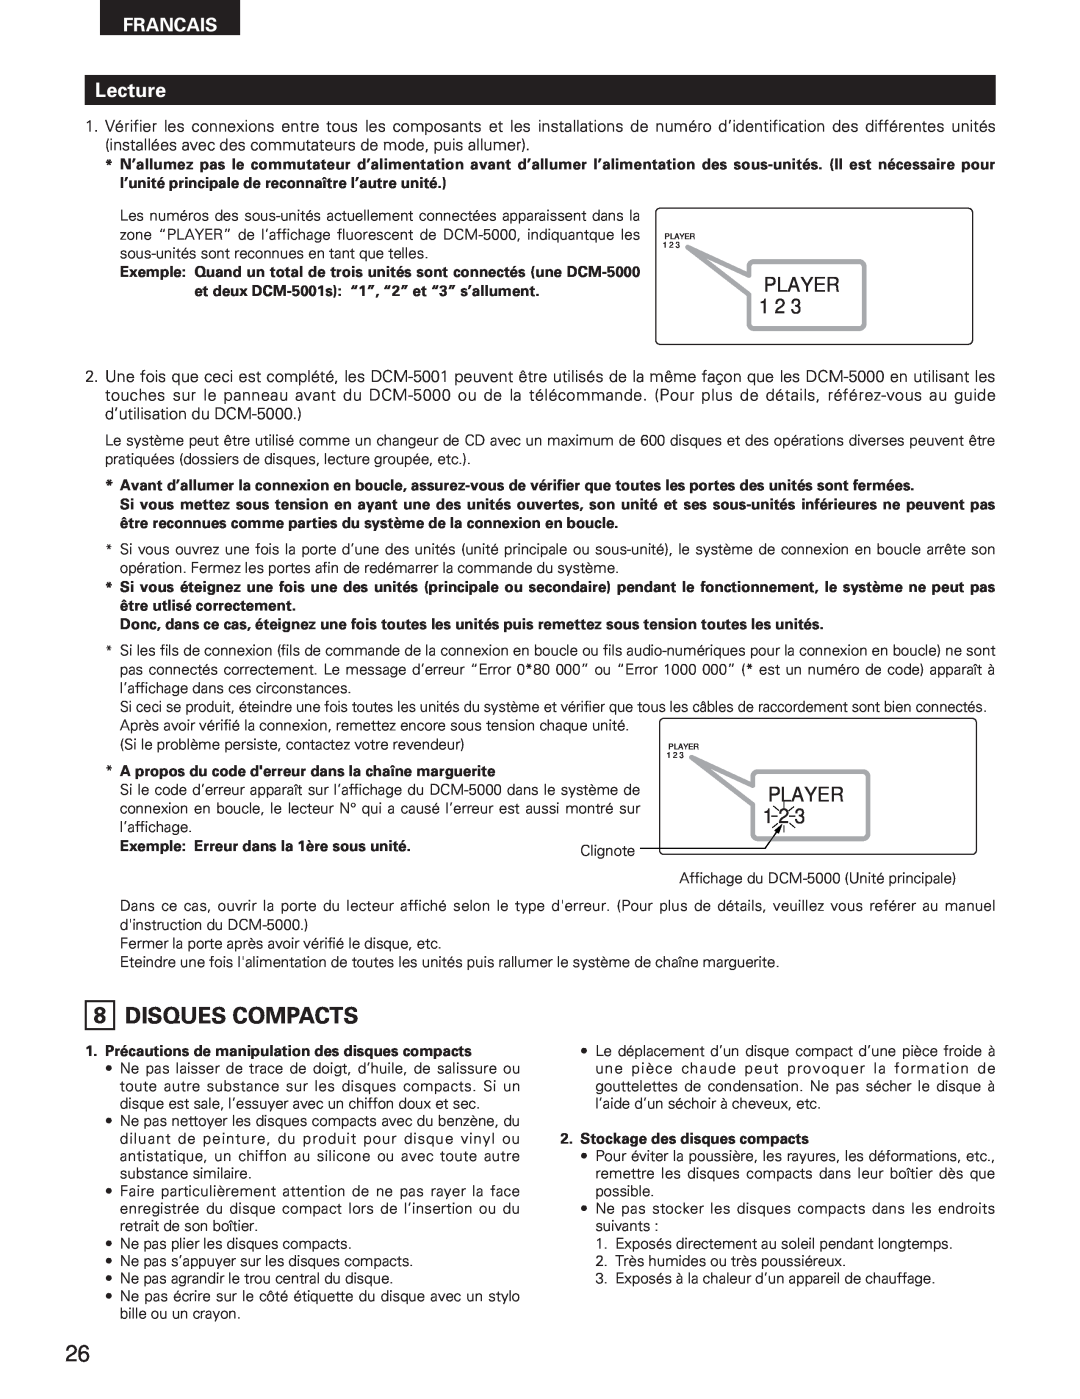 Denon DCM-5001 manual Lecture, Player, Francais, A propos du code derreur dans la chaîne marguerite 